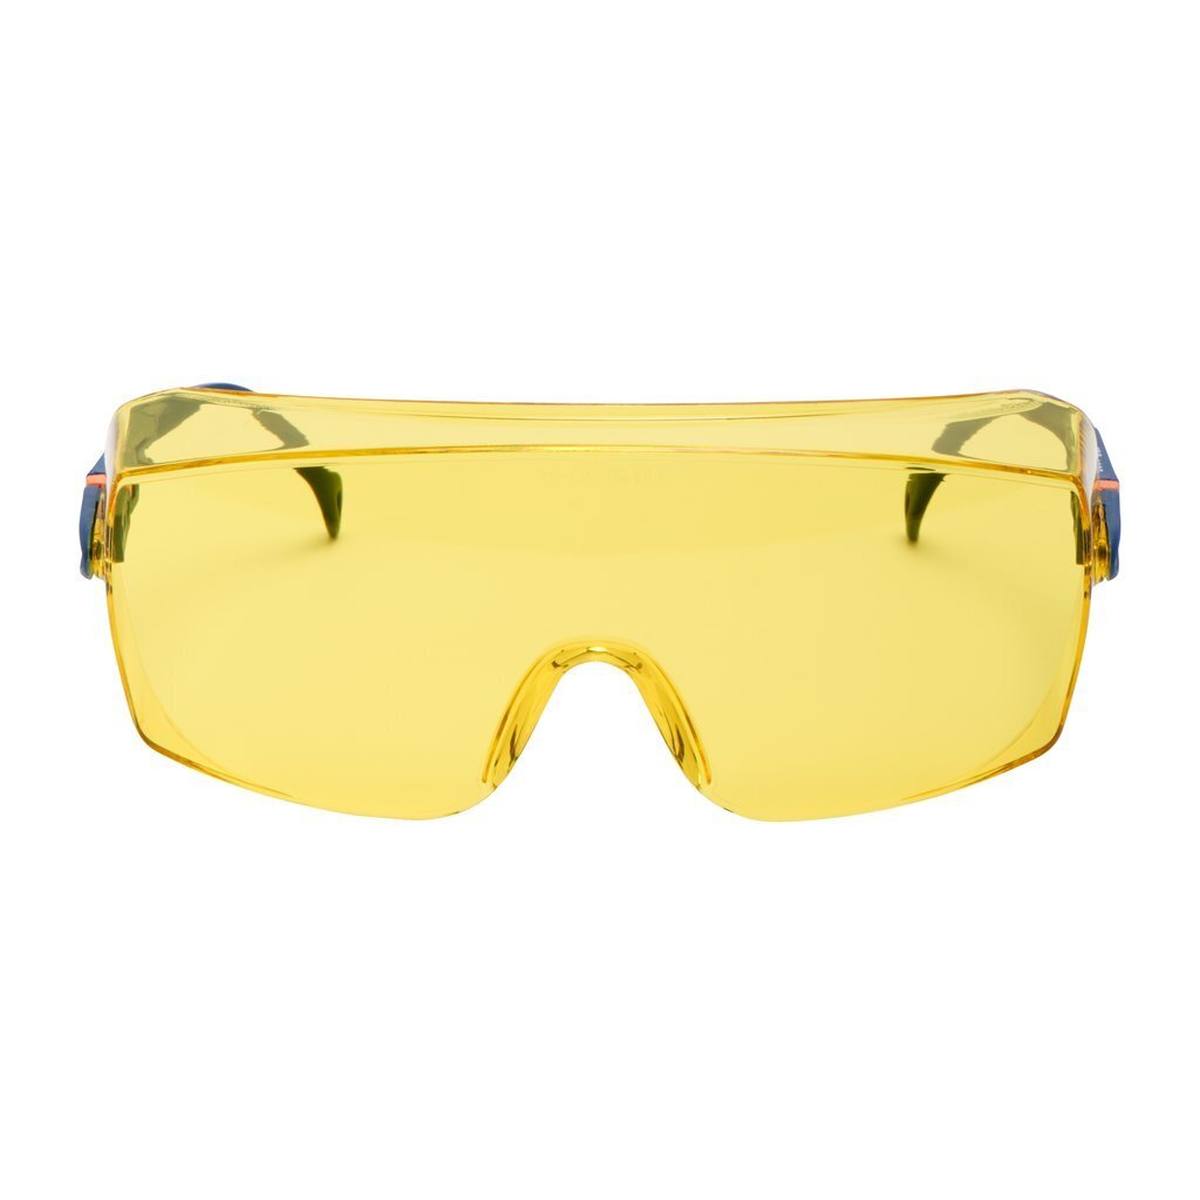 3M 2802 Schutzbrille AS/UV, PC, gelb getönt, einstellbar, ideal als Überbrille für Brillenträger